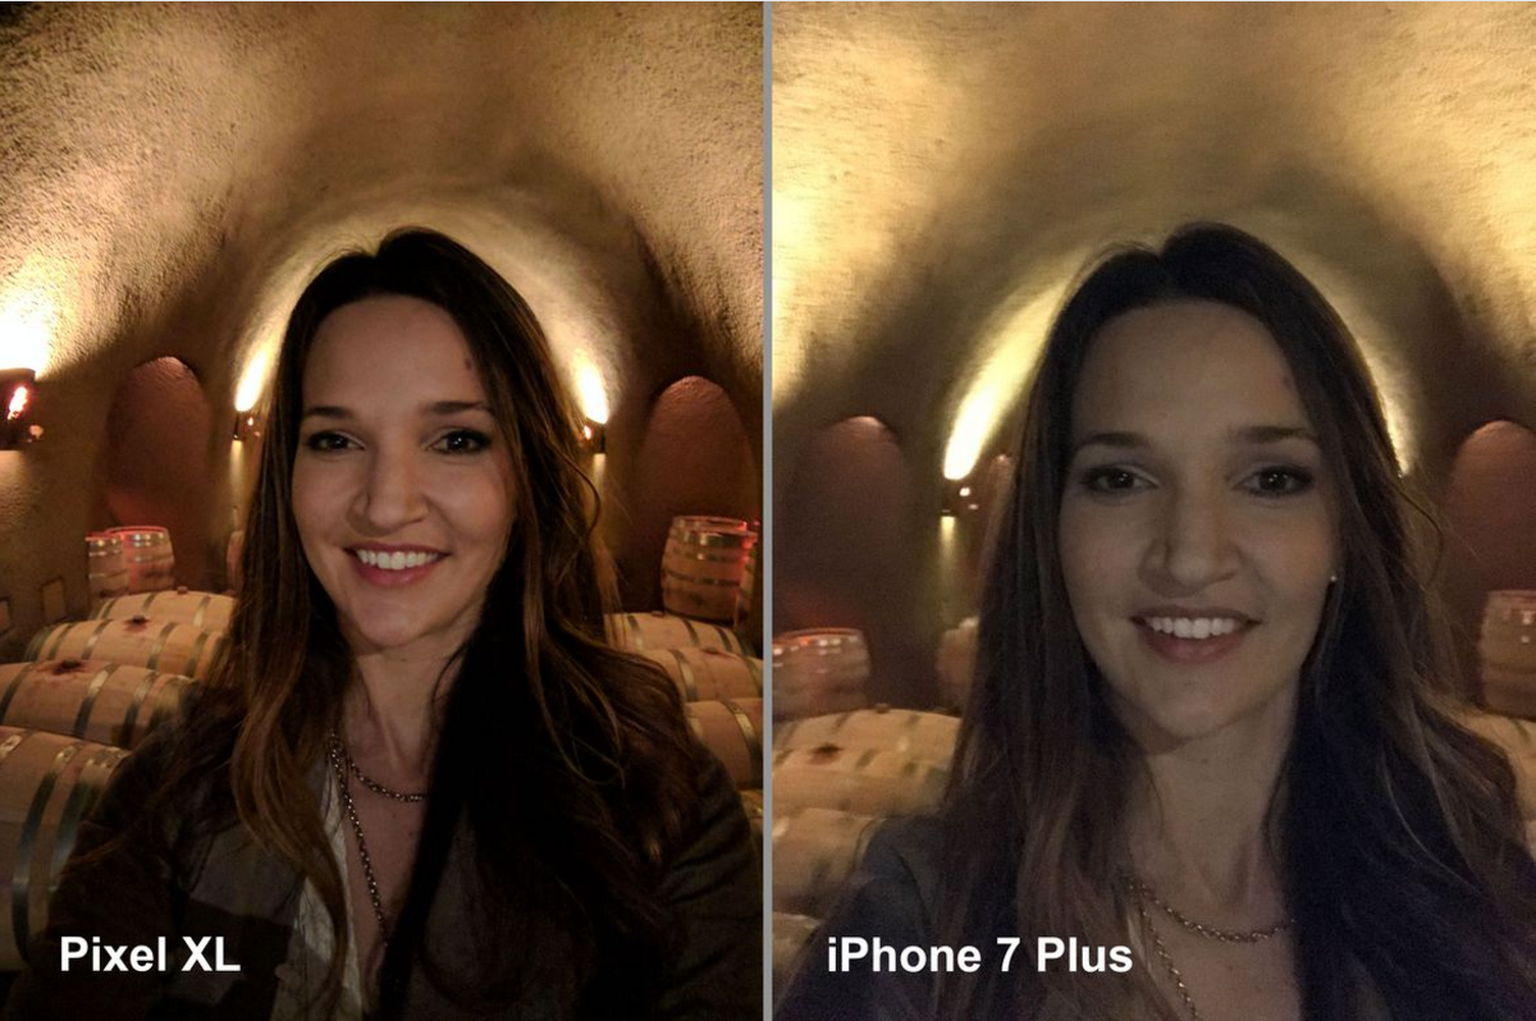 Beim Selfie im schlecht beleuchteten Innenraum wird der Unterschied frappant.